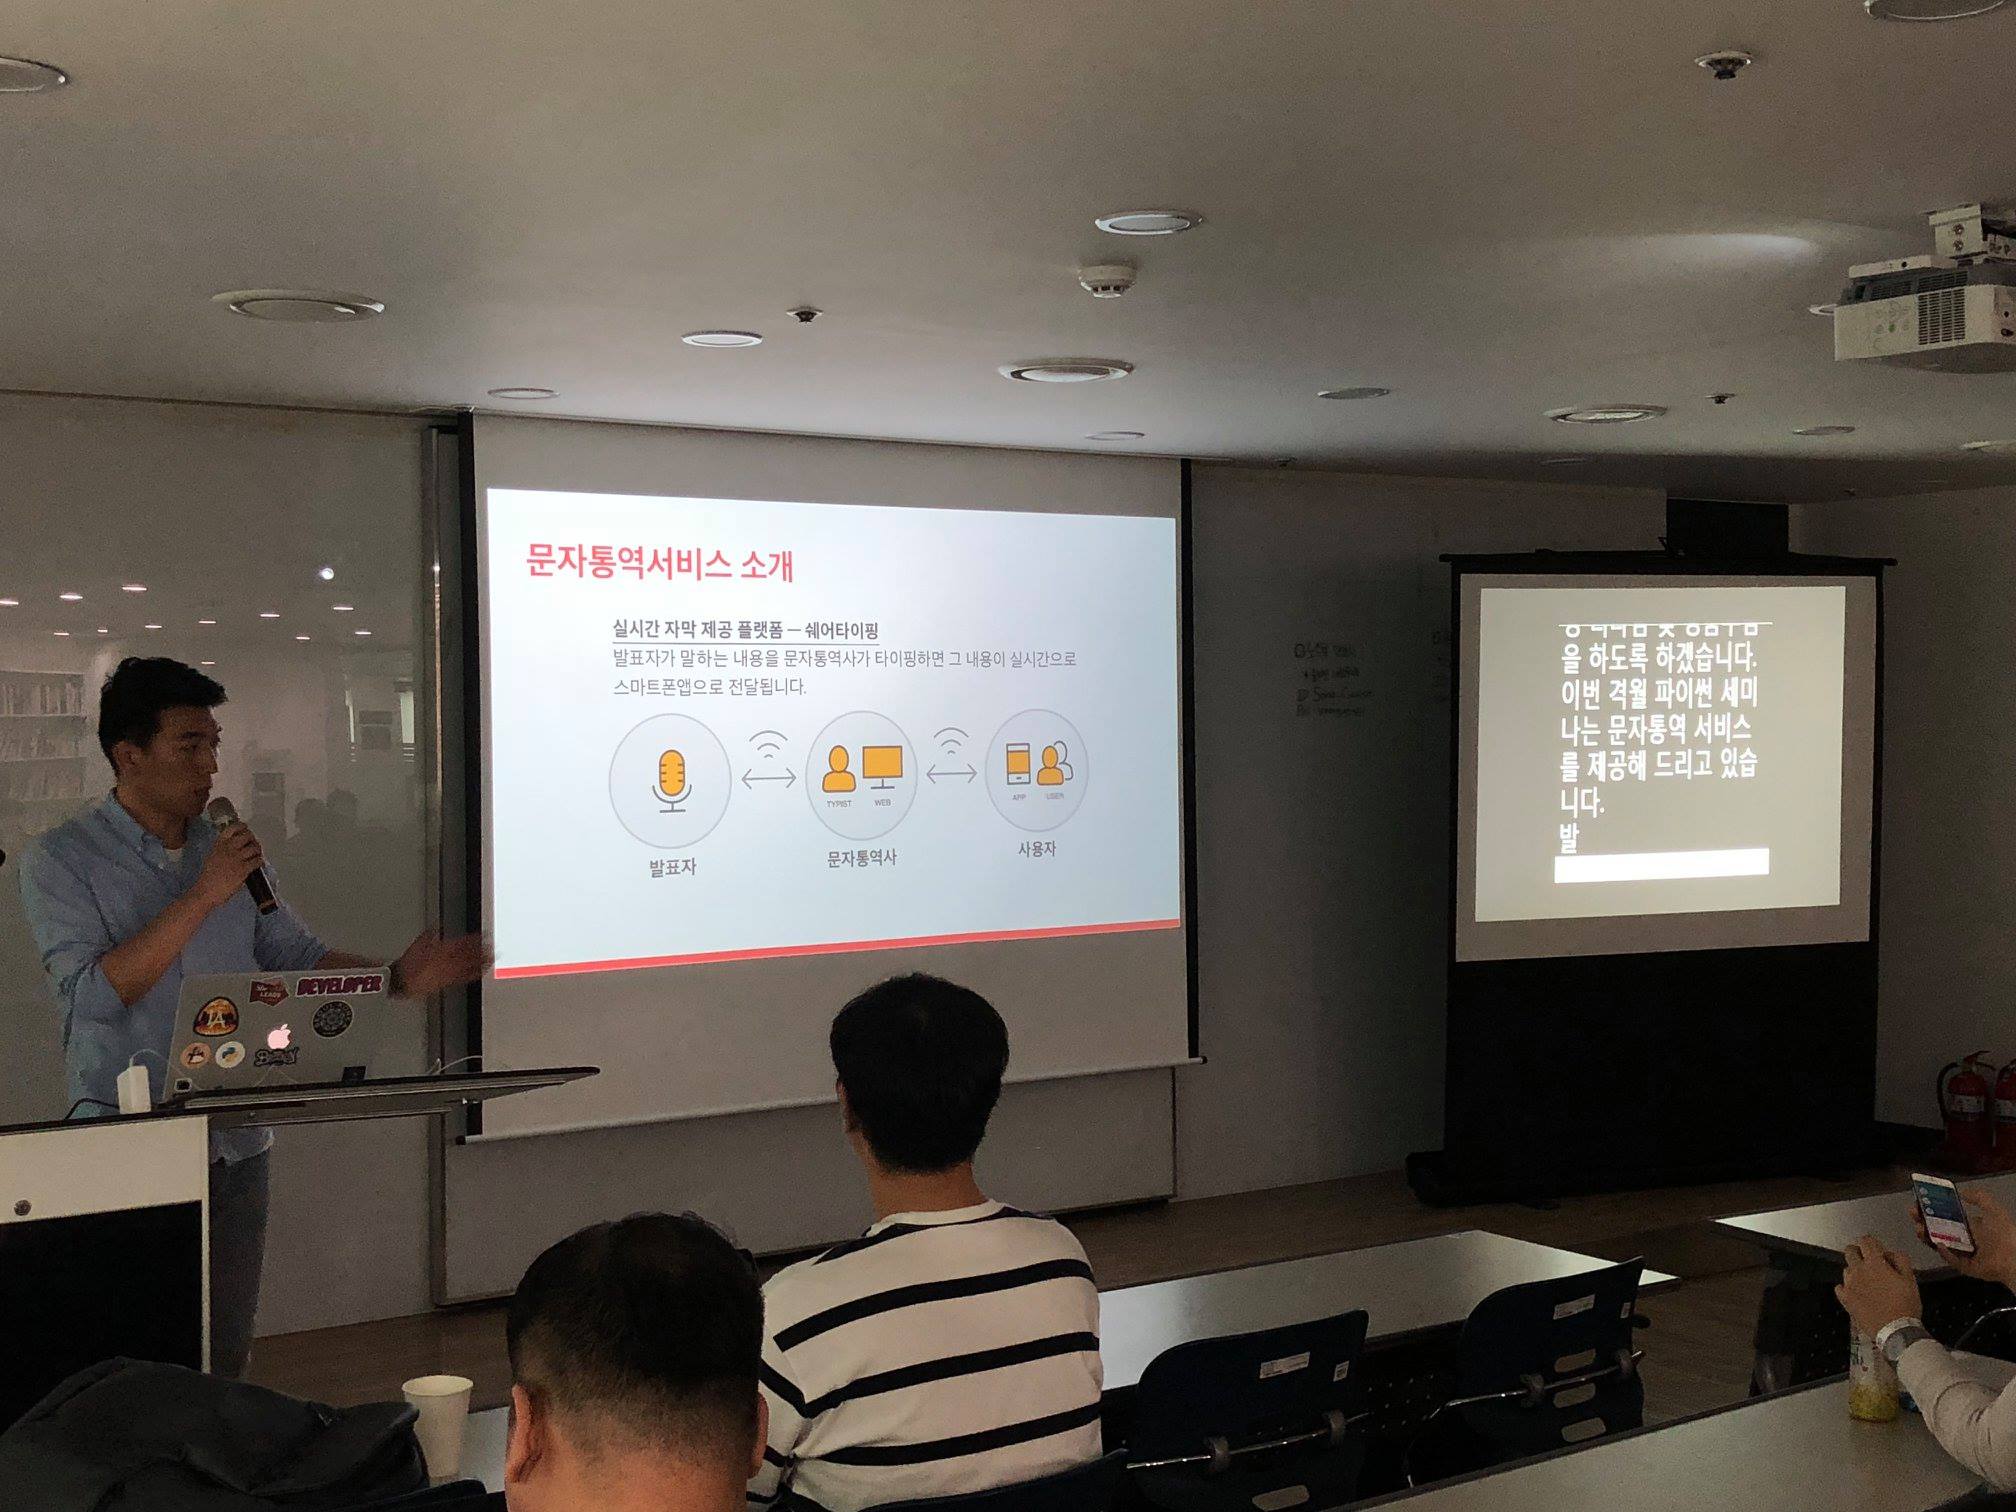 문자통역 in Pycon Korea 2018/05 seminar